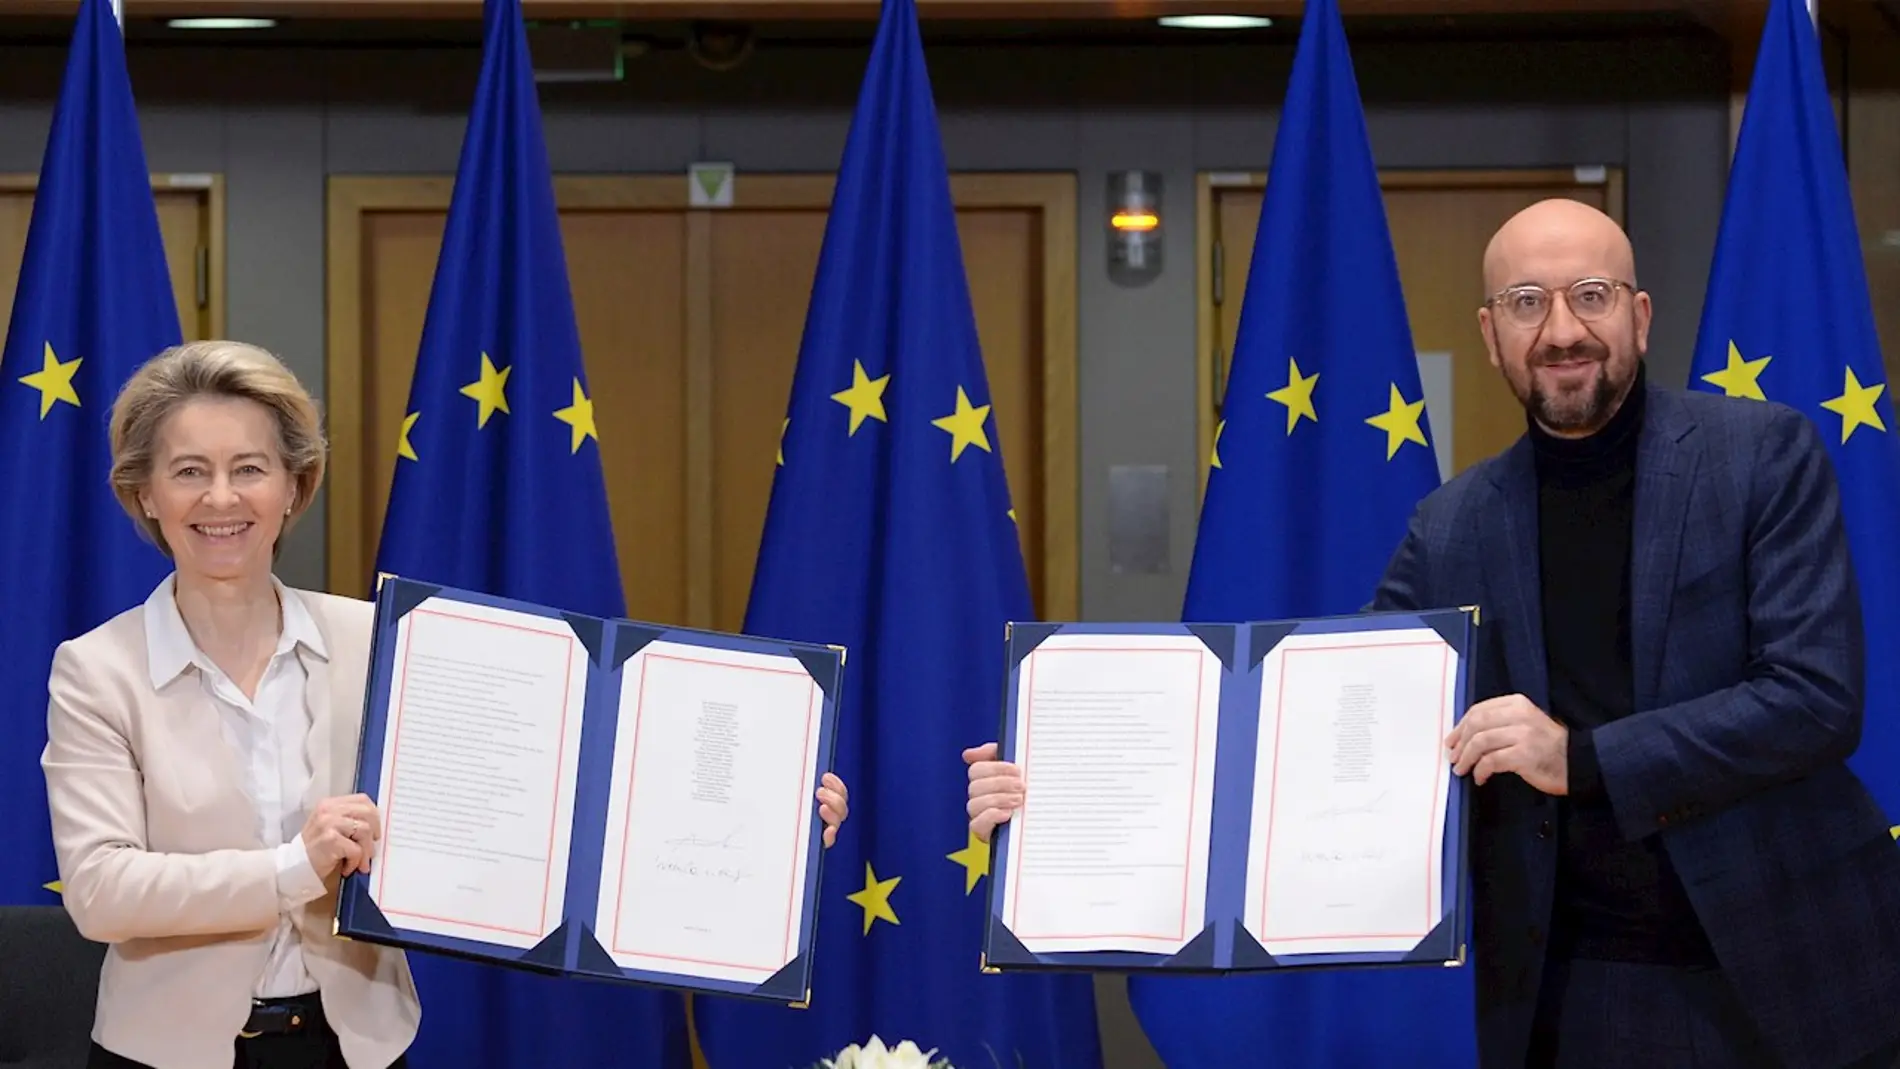 La presidenta de la Comisión Europea, Ursula von der Leyen, y el presidente del Consejo Europeo, Charles Michel, firman los tres tratados que regularán la relación entre la UE y el RU